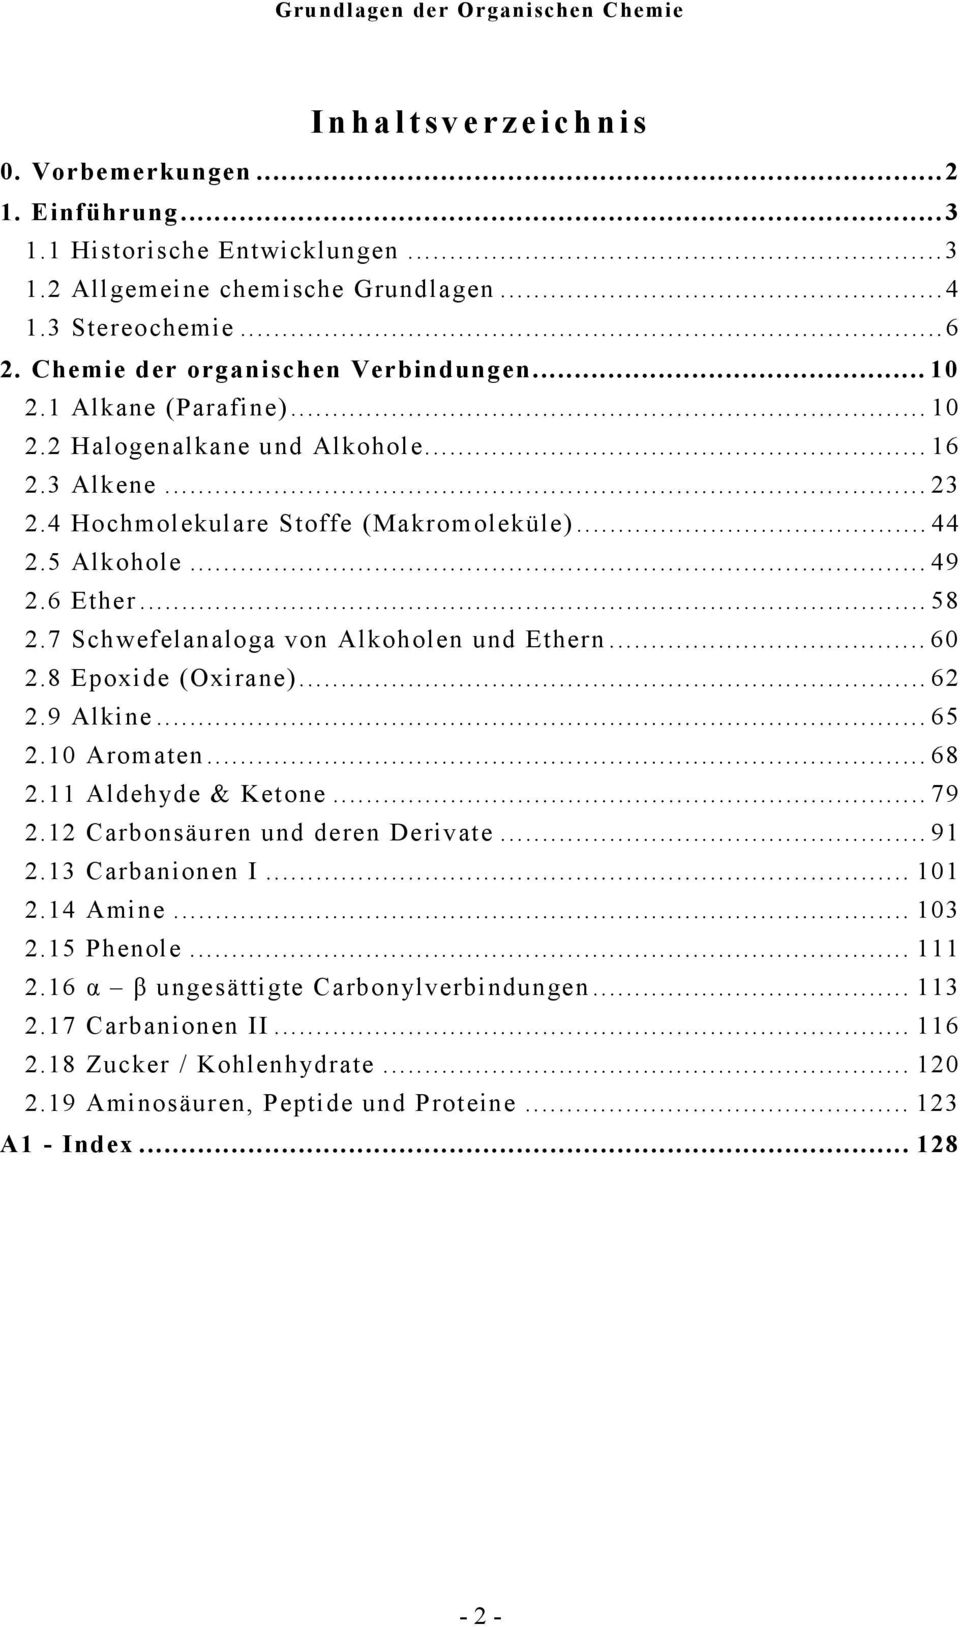 7 Schwefelanaloga von Alkoholen und Ethern...60 2.8 Epoxide (xirane)...62 2.9 Alkine...65 2.10 Aromaten...68 2.11 Aldehyde & Ketone...79 2.12 arbonsäuren und deren Derivate...91 2.13 arbanionen I.